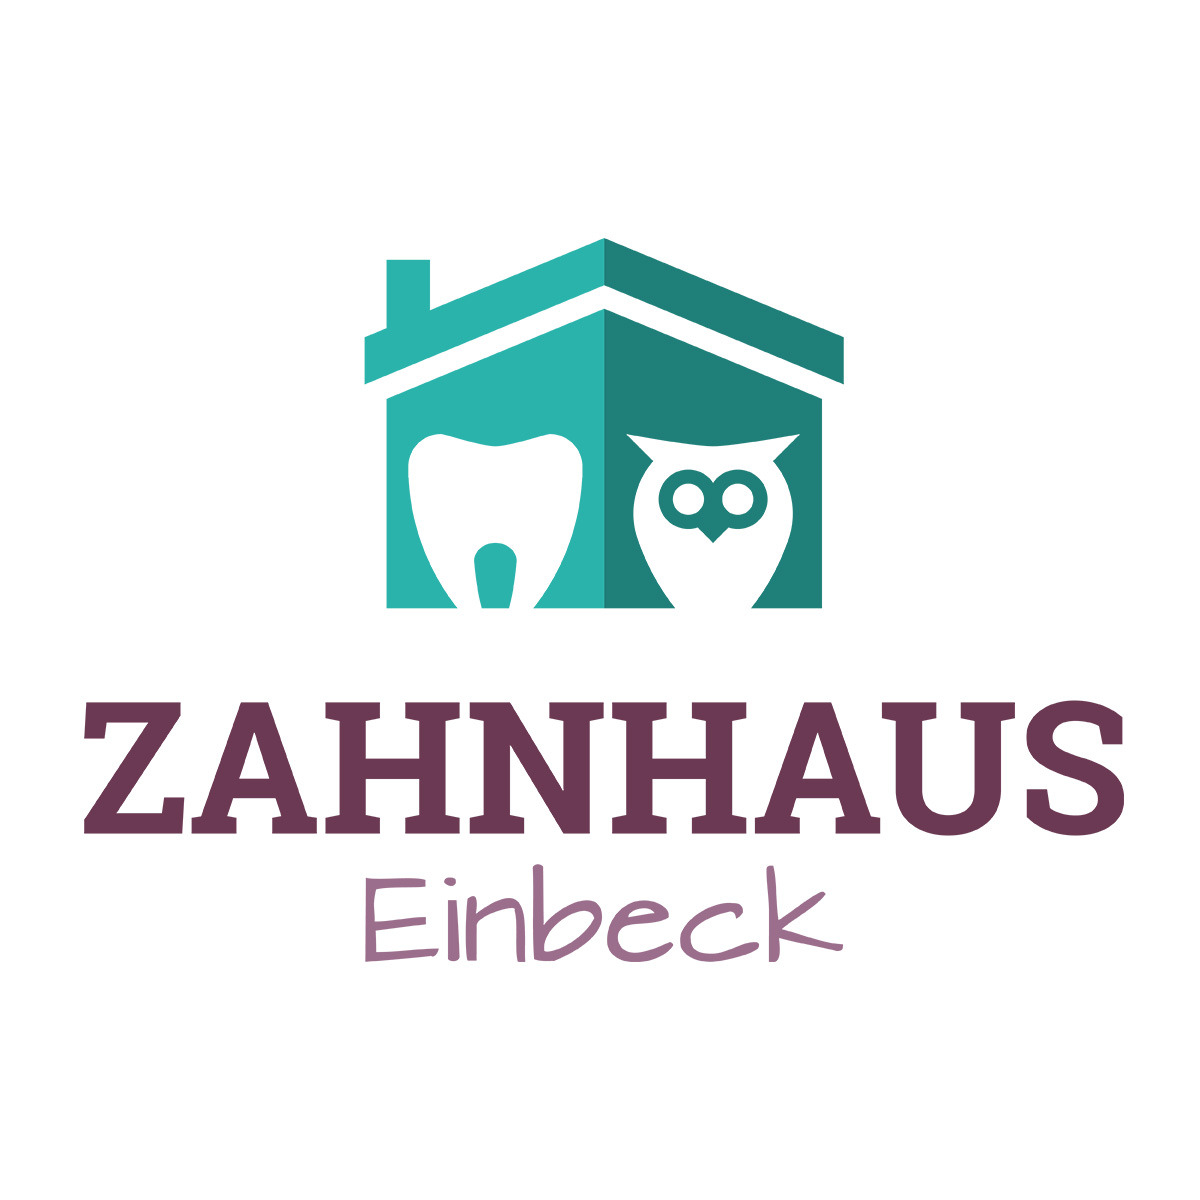 MVZ Zahnhaus Einbeck | Claudia Zimmer-Mildner - Dentist - Einbeck - 05561 9417766 Germany | ShowMeLocal.com